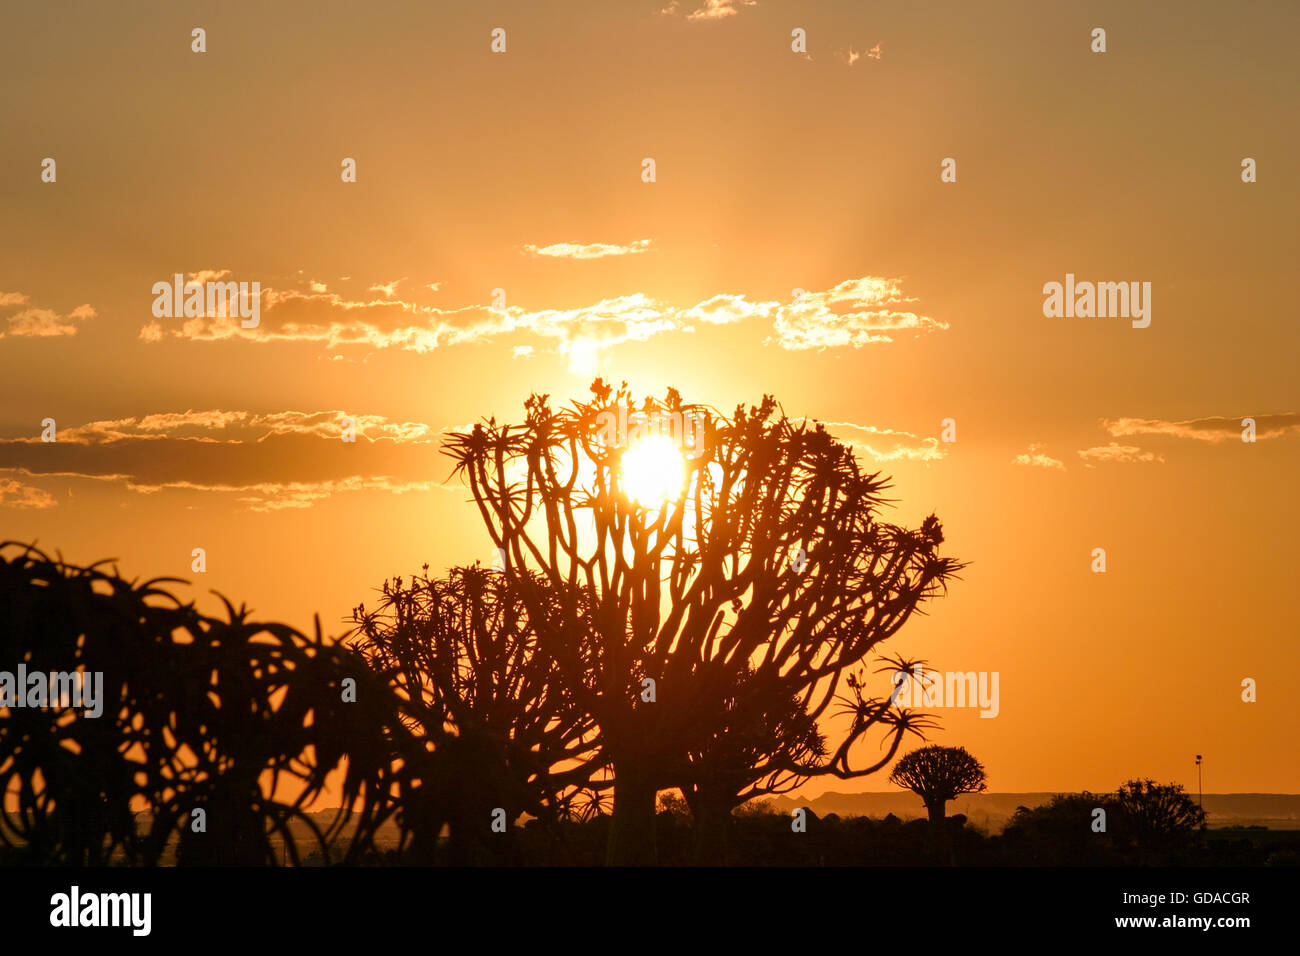 La Namibie, Karas, Keetmanshoop, arbres carquois carquois au crépuscule, arbre, une espèce de plante du genre Aloen dans la sous-famille des Affodillgewächse Banque D'Images